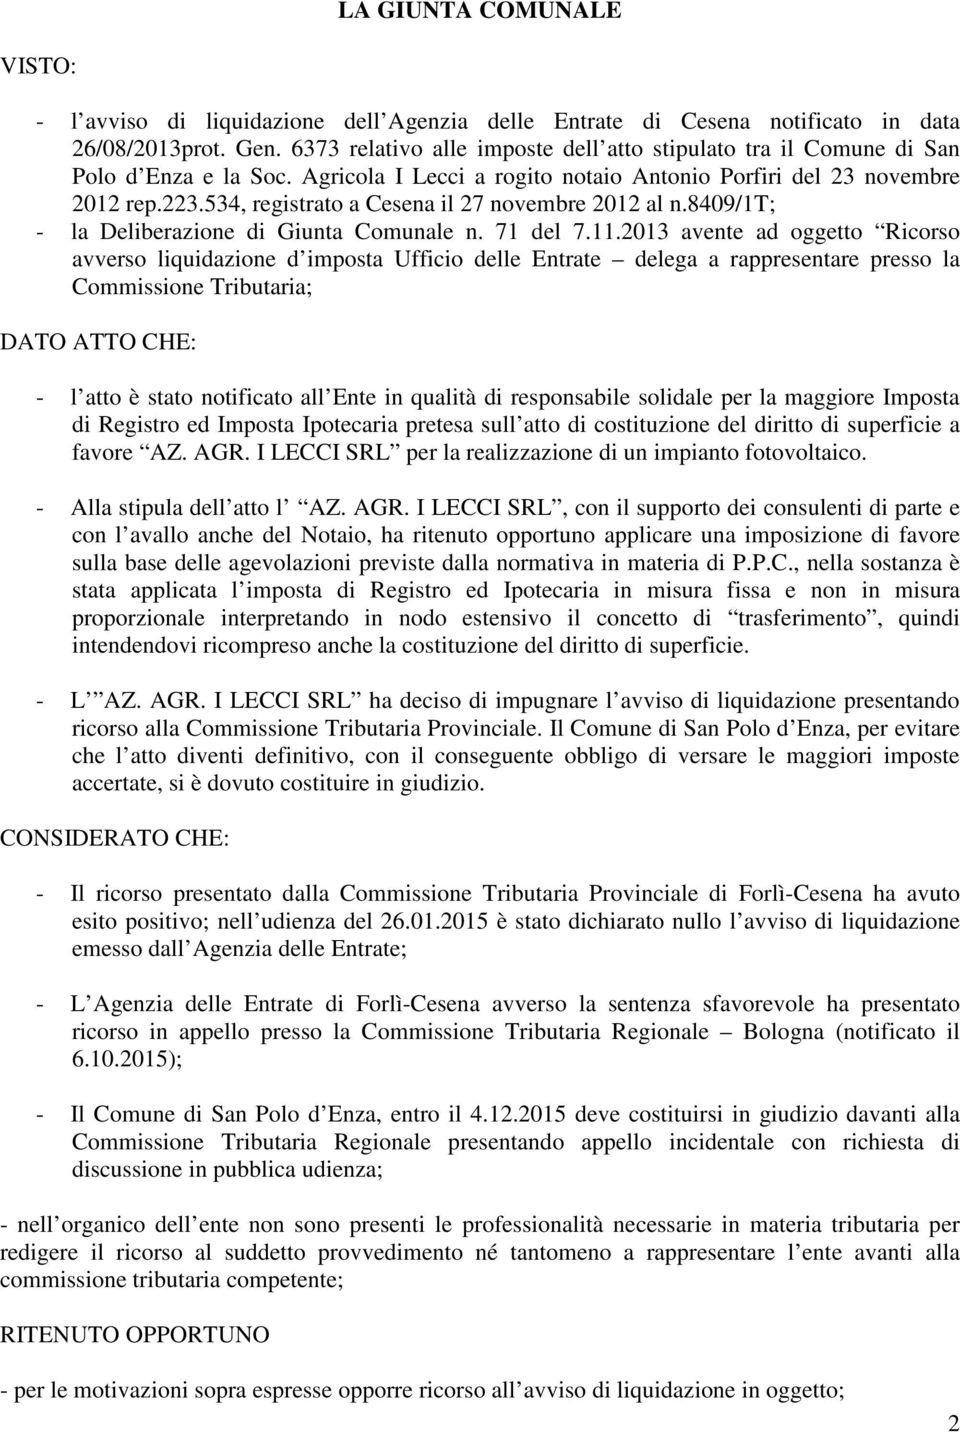 534, registrato a Cesena il 27 novembre 2012 al n.8409/1t; - la Deliberazione di Giunta Comunale n. 71 del 7.11.